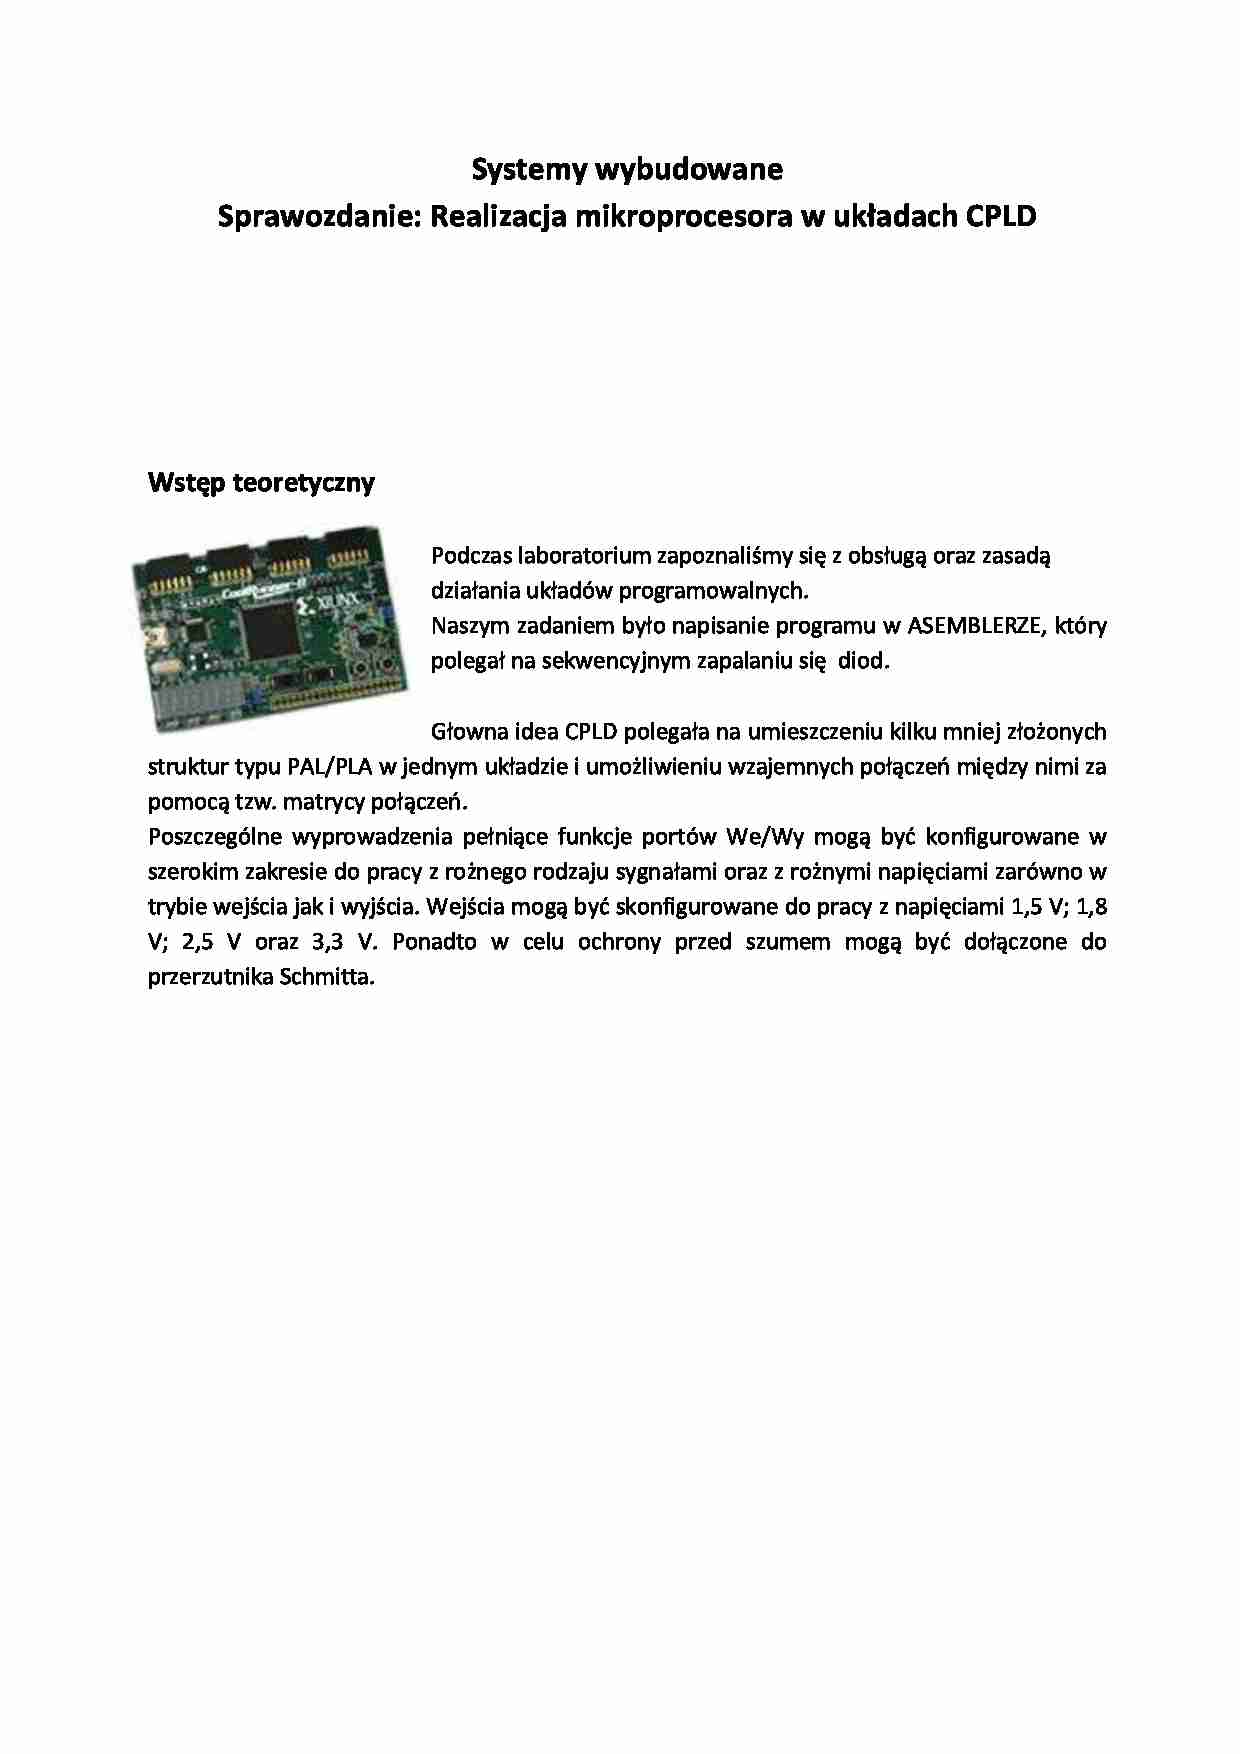 Realizacja mikroprocesora w układach CPLD-sprawozdanie - strona 1